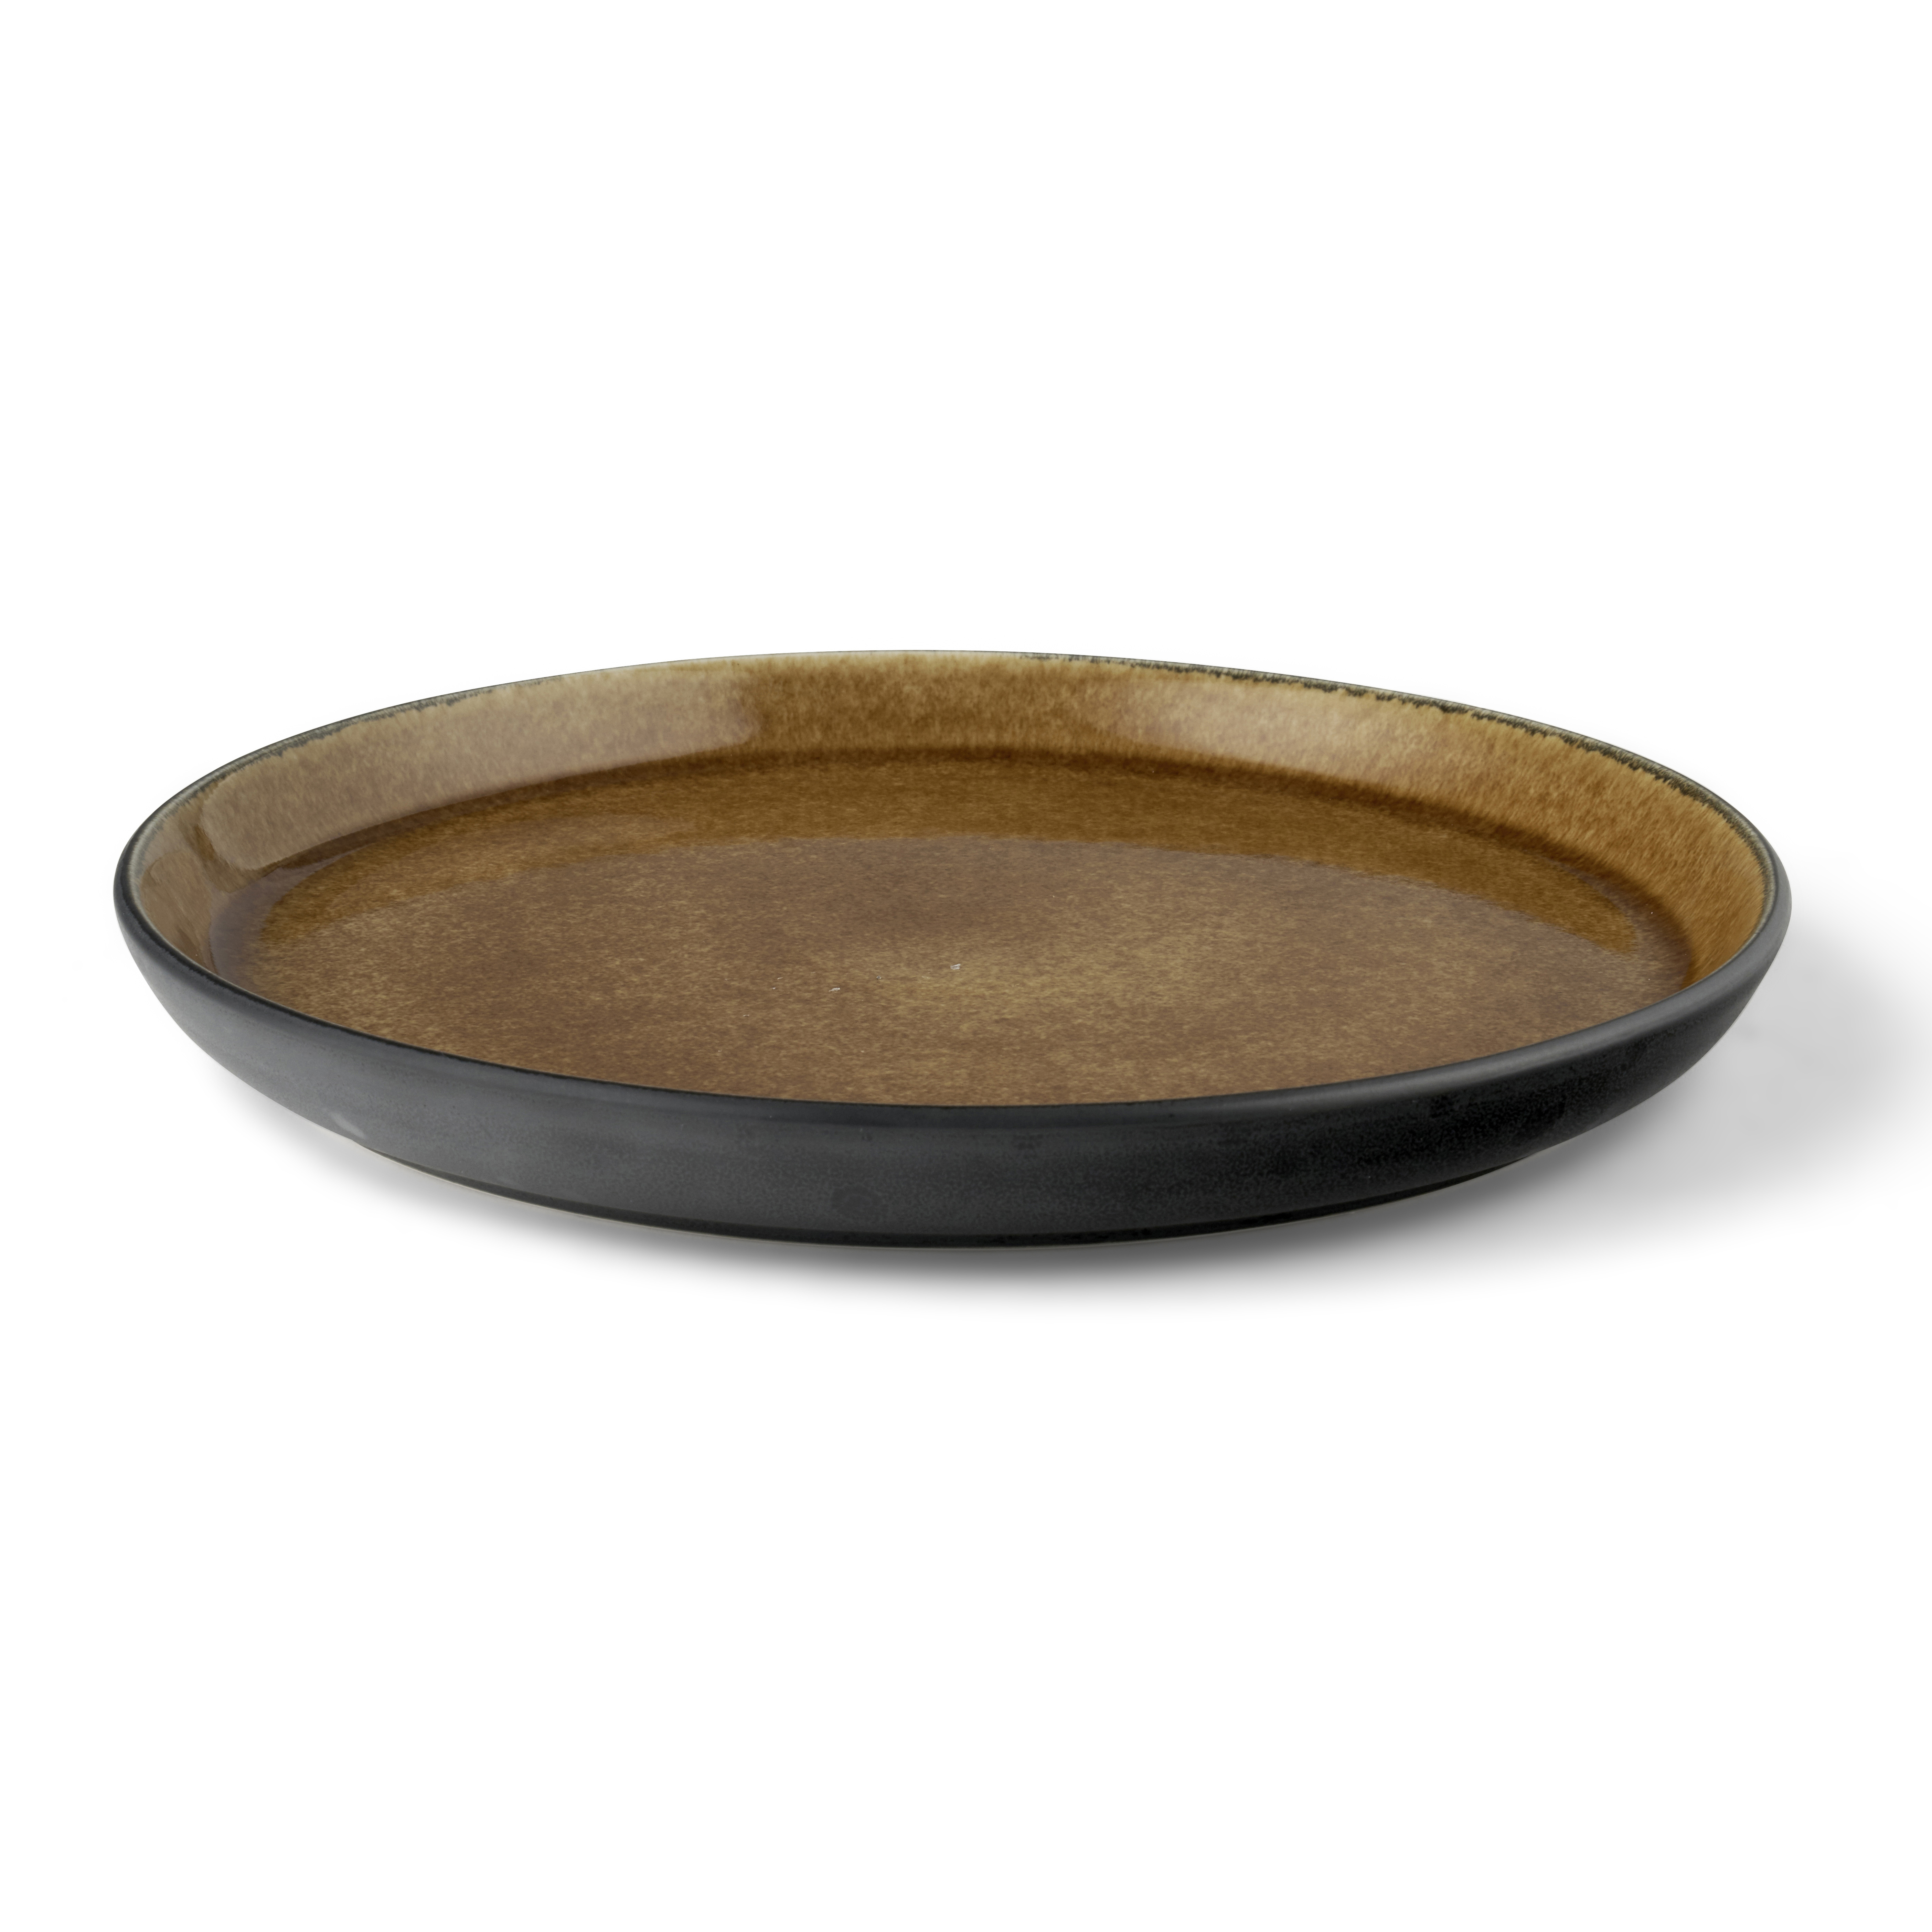 Dinner plate, Round, Stoneware, Green, 27 cm, 25 mm BITZ 821252 Plato 